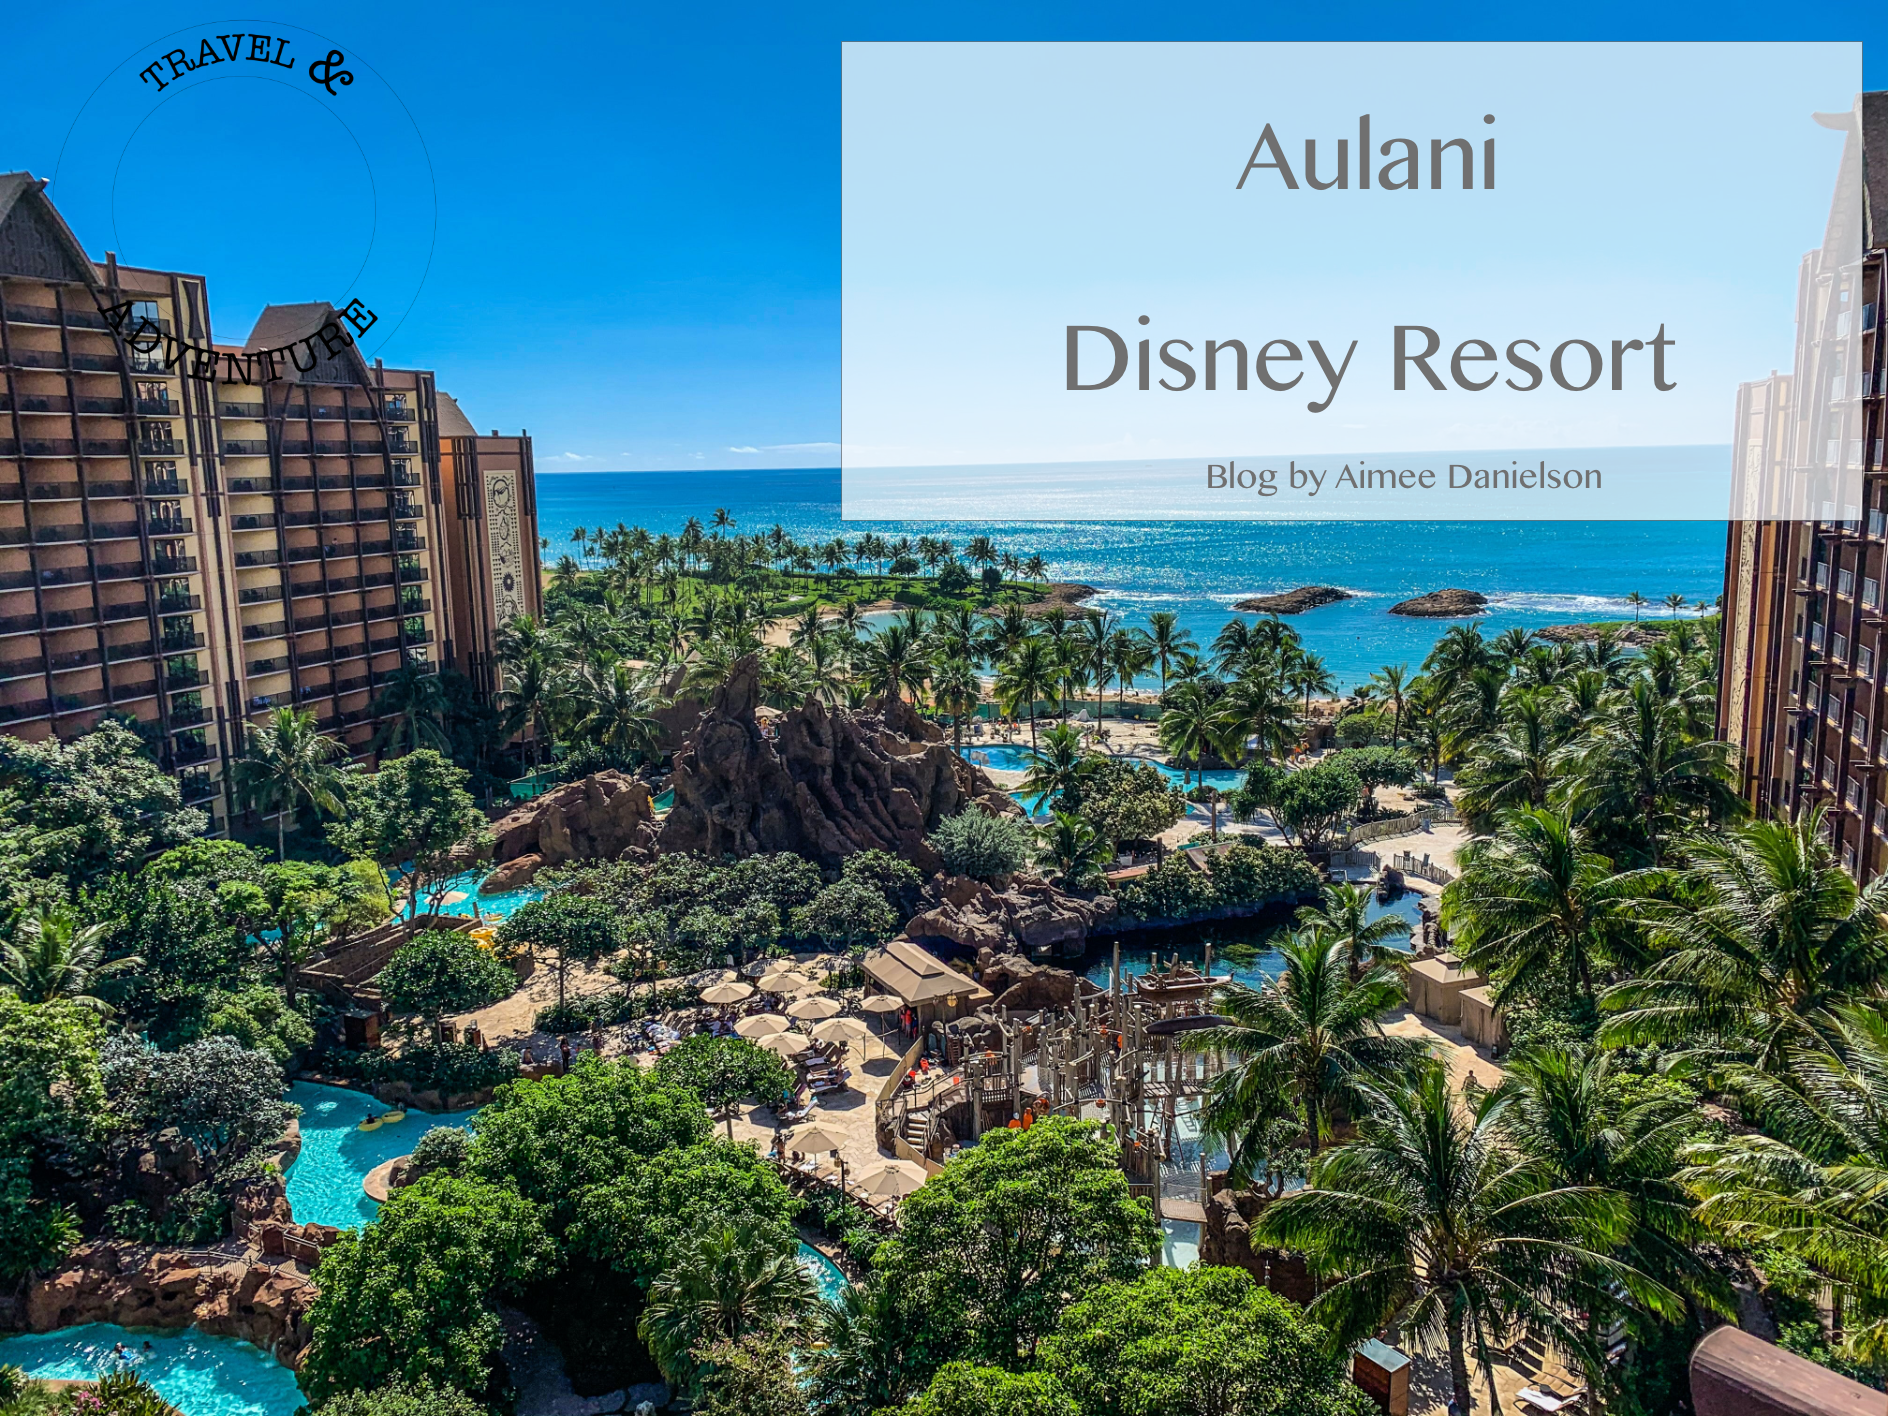 Disney's Aulani, Oahu Hawaii!